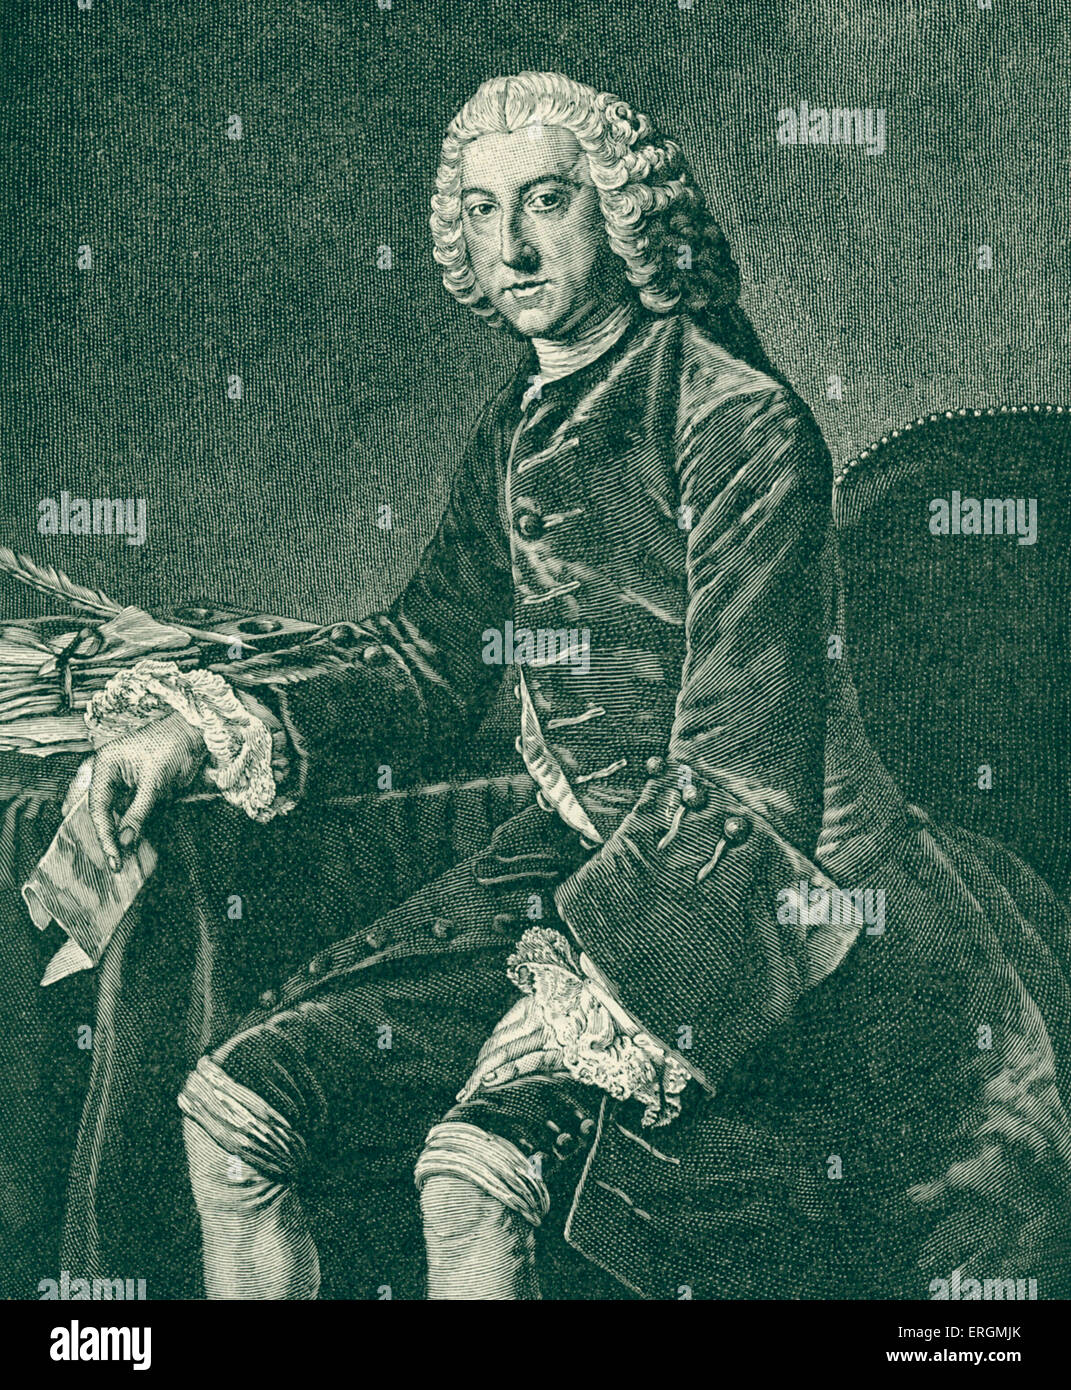 William Pitt, Earl of Chatham - Porträt. Englische Whig-Politiker, politischer Führer während des Siebenjährigen Krieges: 15. November 1708 – 11. Mai 1778. Stockfoto